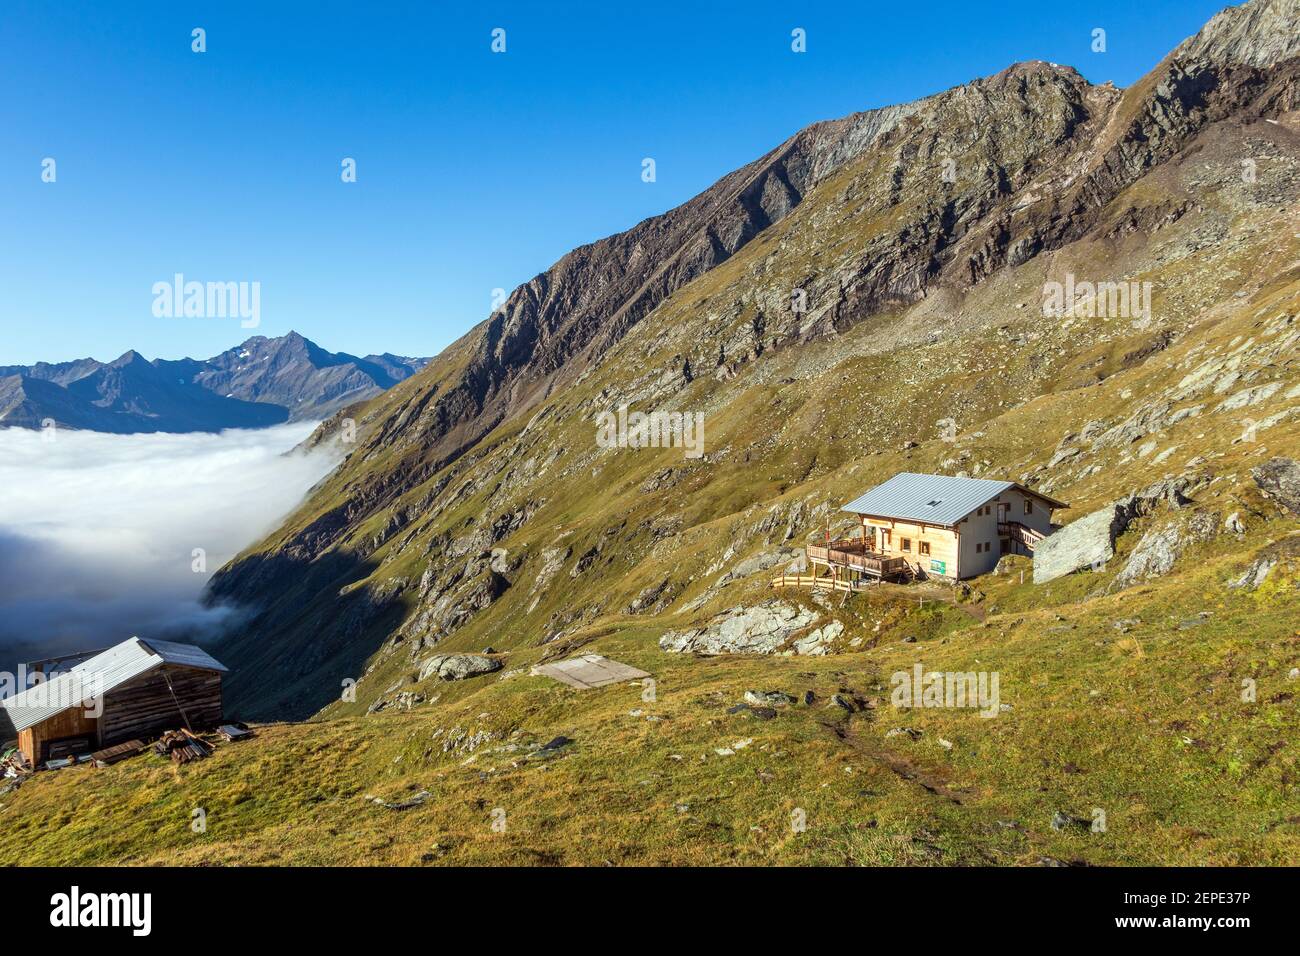 Eisseehütte alpine refuge. Timmeltal valley. Austrian Alps. Europe. Stock Photo